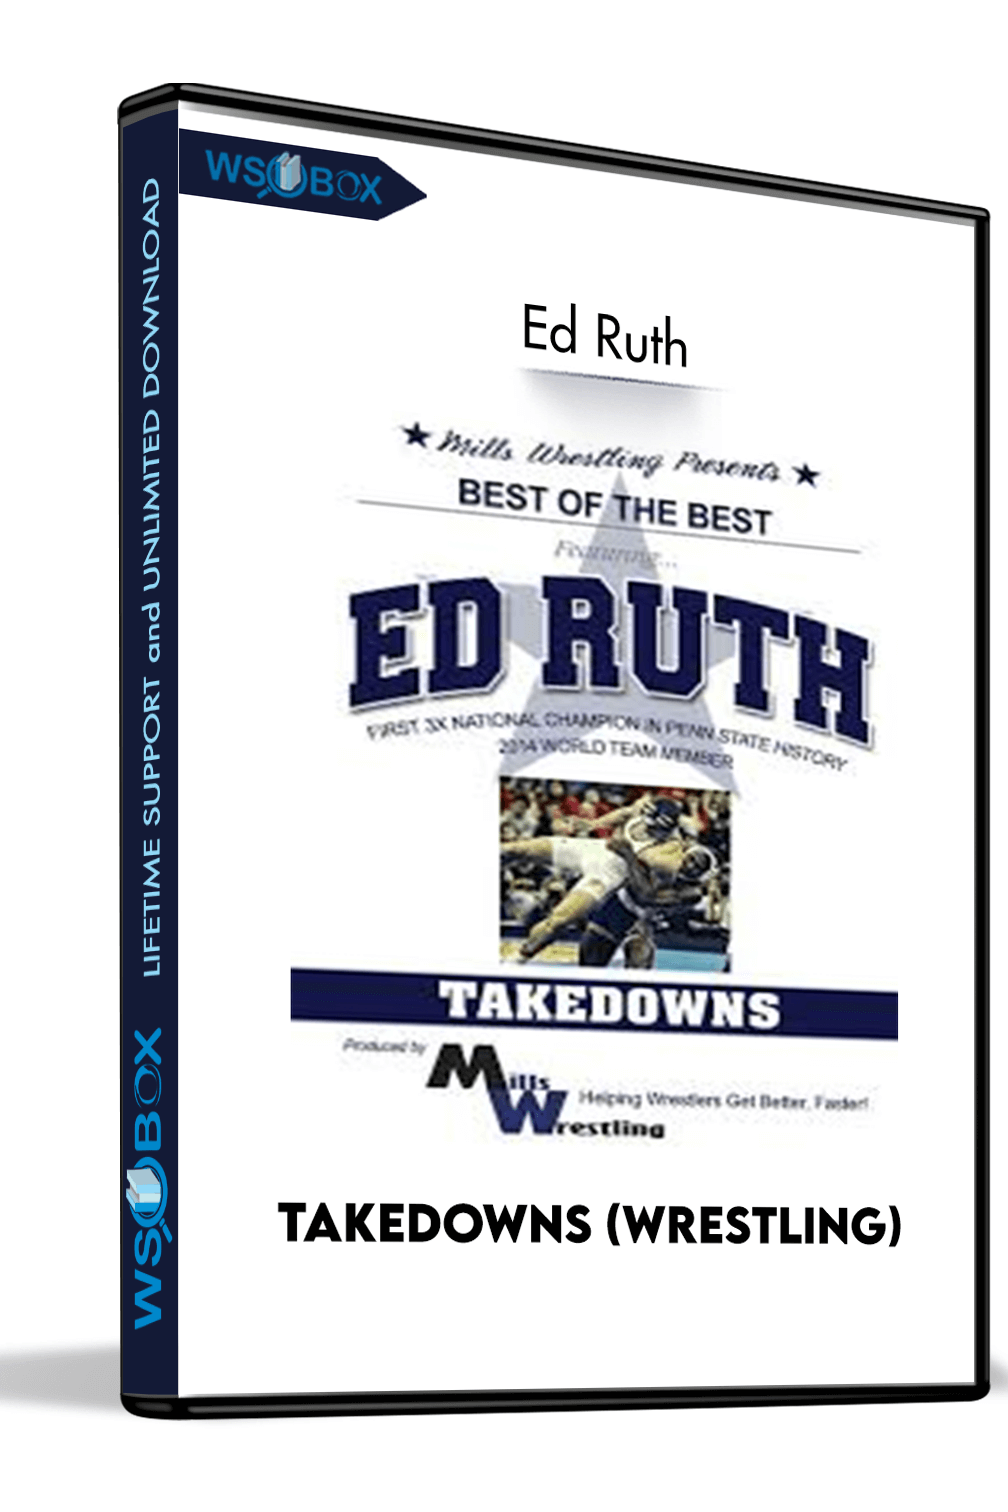 Takedowns (wrestling) – Ed Ruth